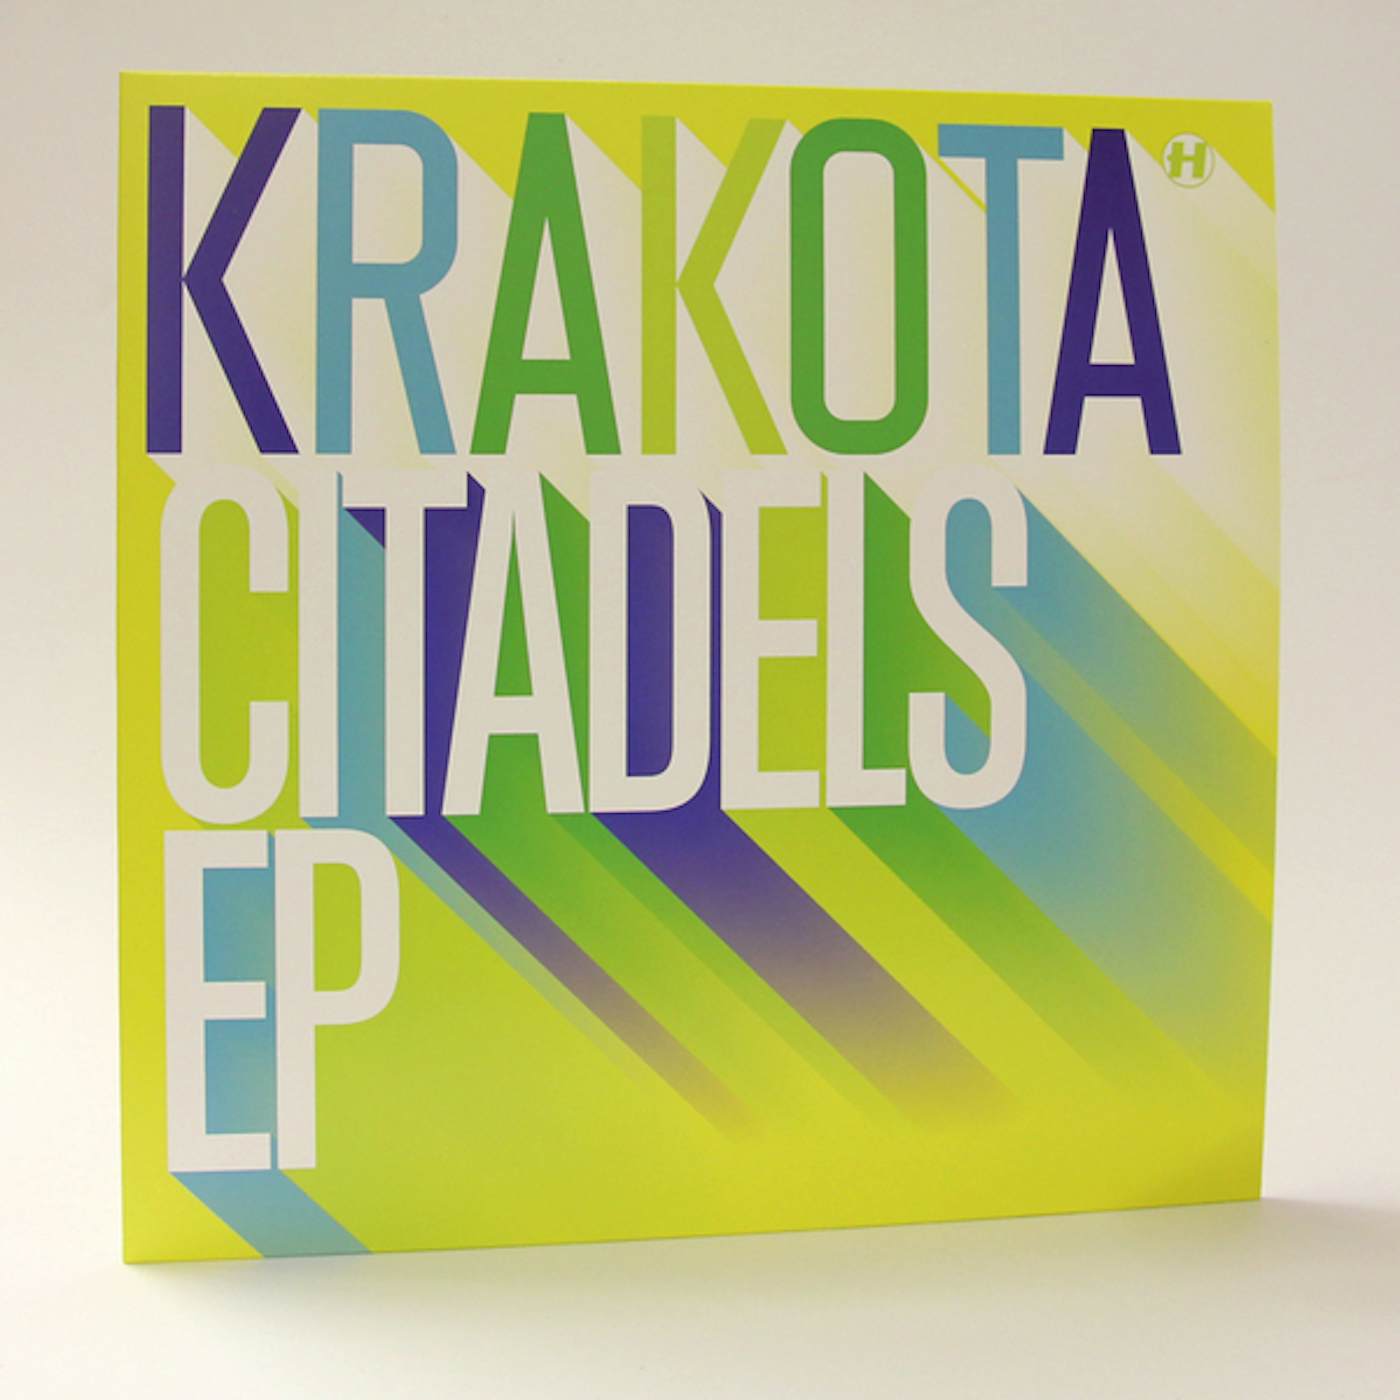 Krakota Citadels EP (Vinyl)